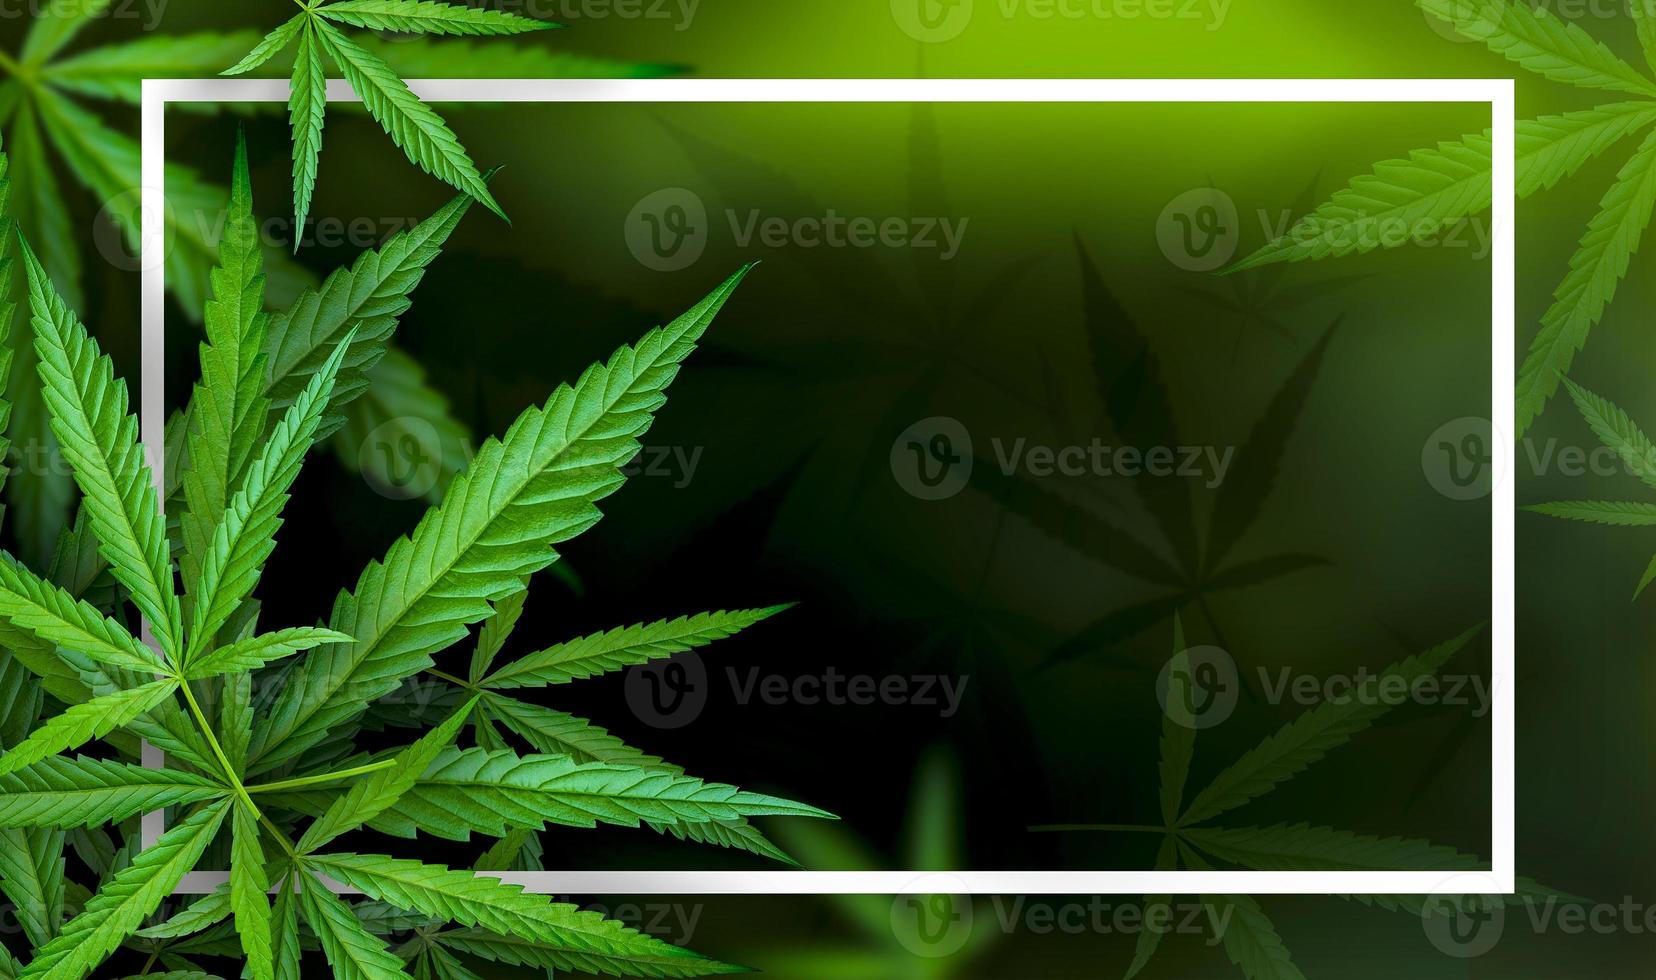 Marihuana-Blatt-Illustrationen auf dunklem Cannabis-Hintergrund foto